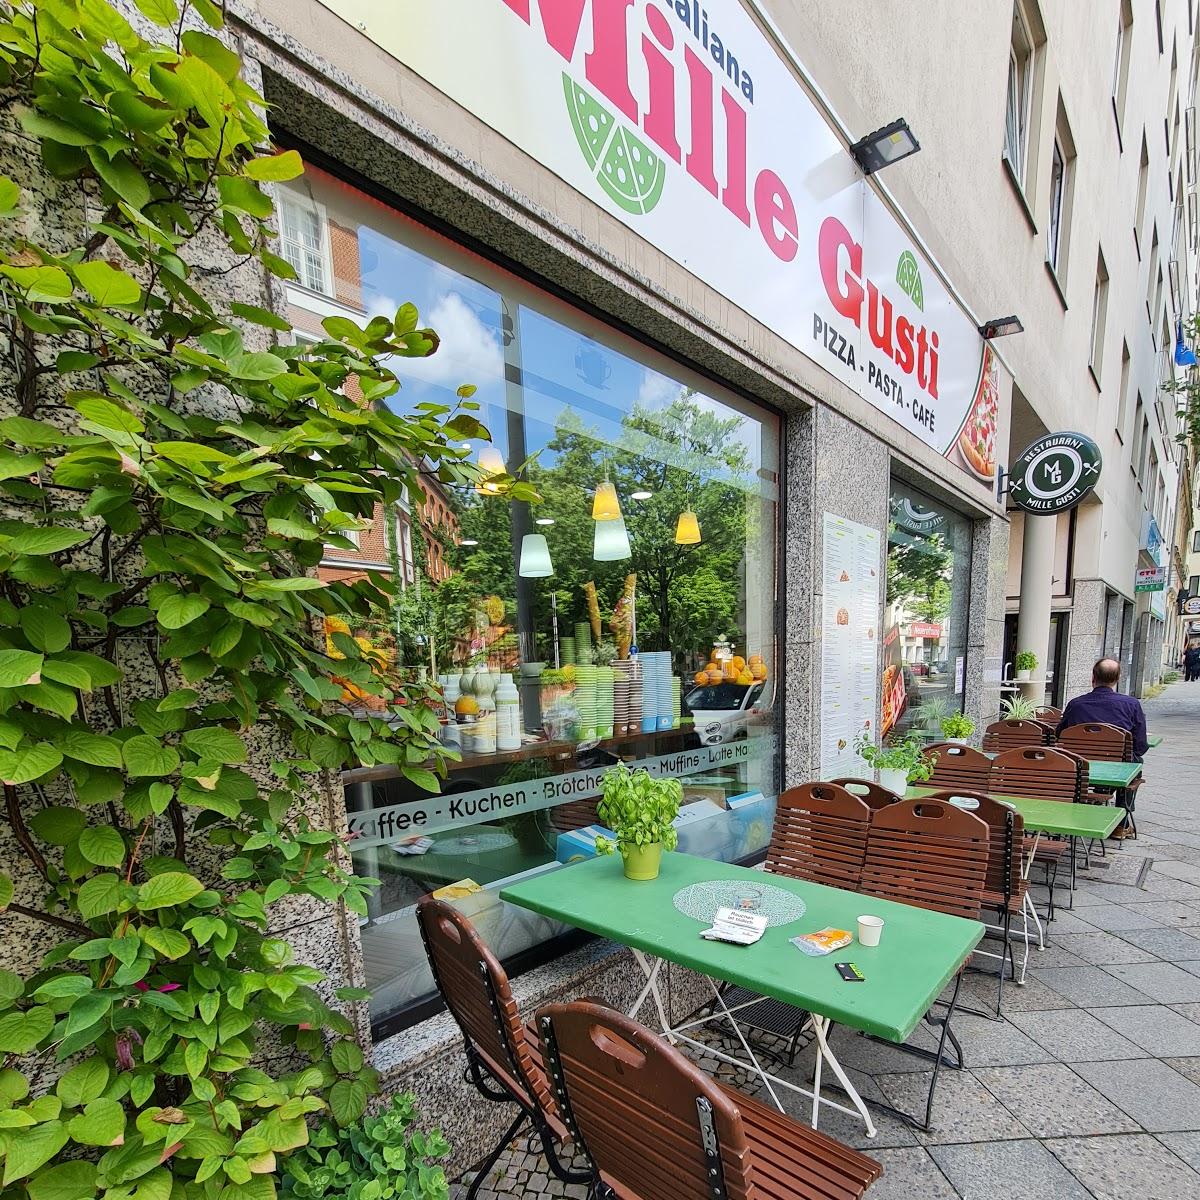 Restaurant "Mille Gusti Berlin" in Berlin